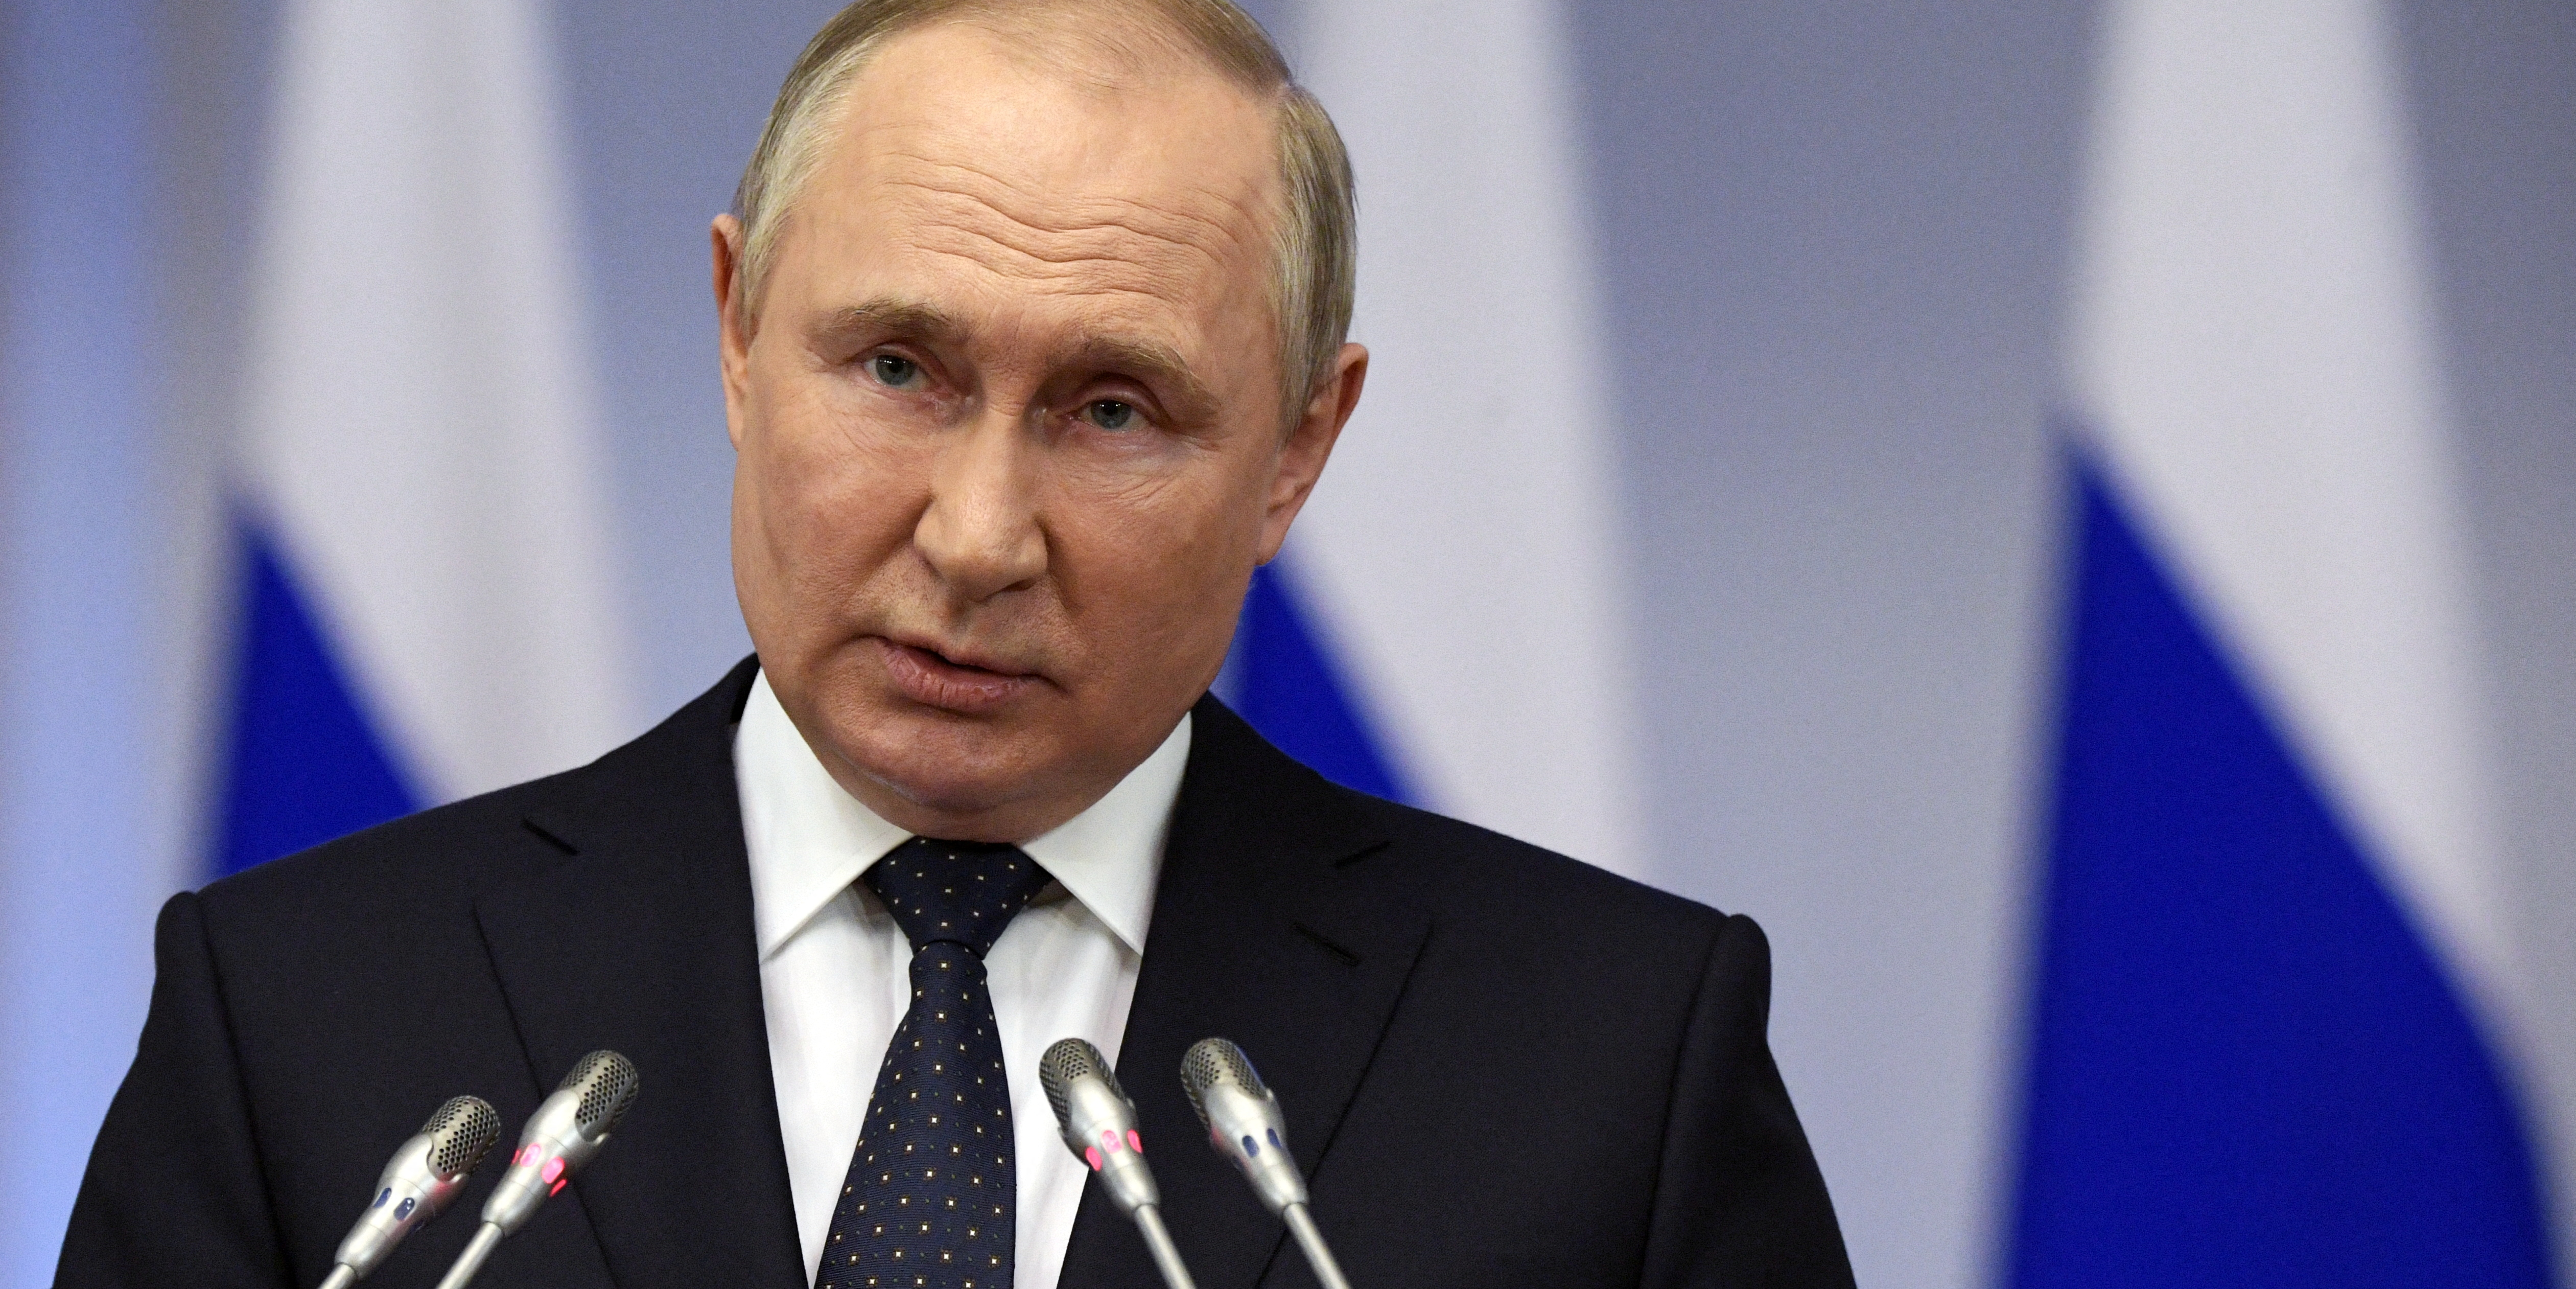 Vladimir Poutine met en garde l'Occident contre ses livraisons d'armes à l'Ukraine